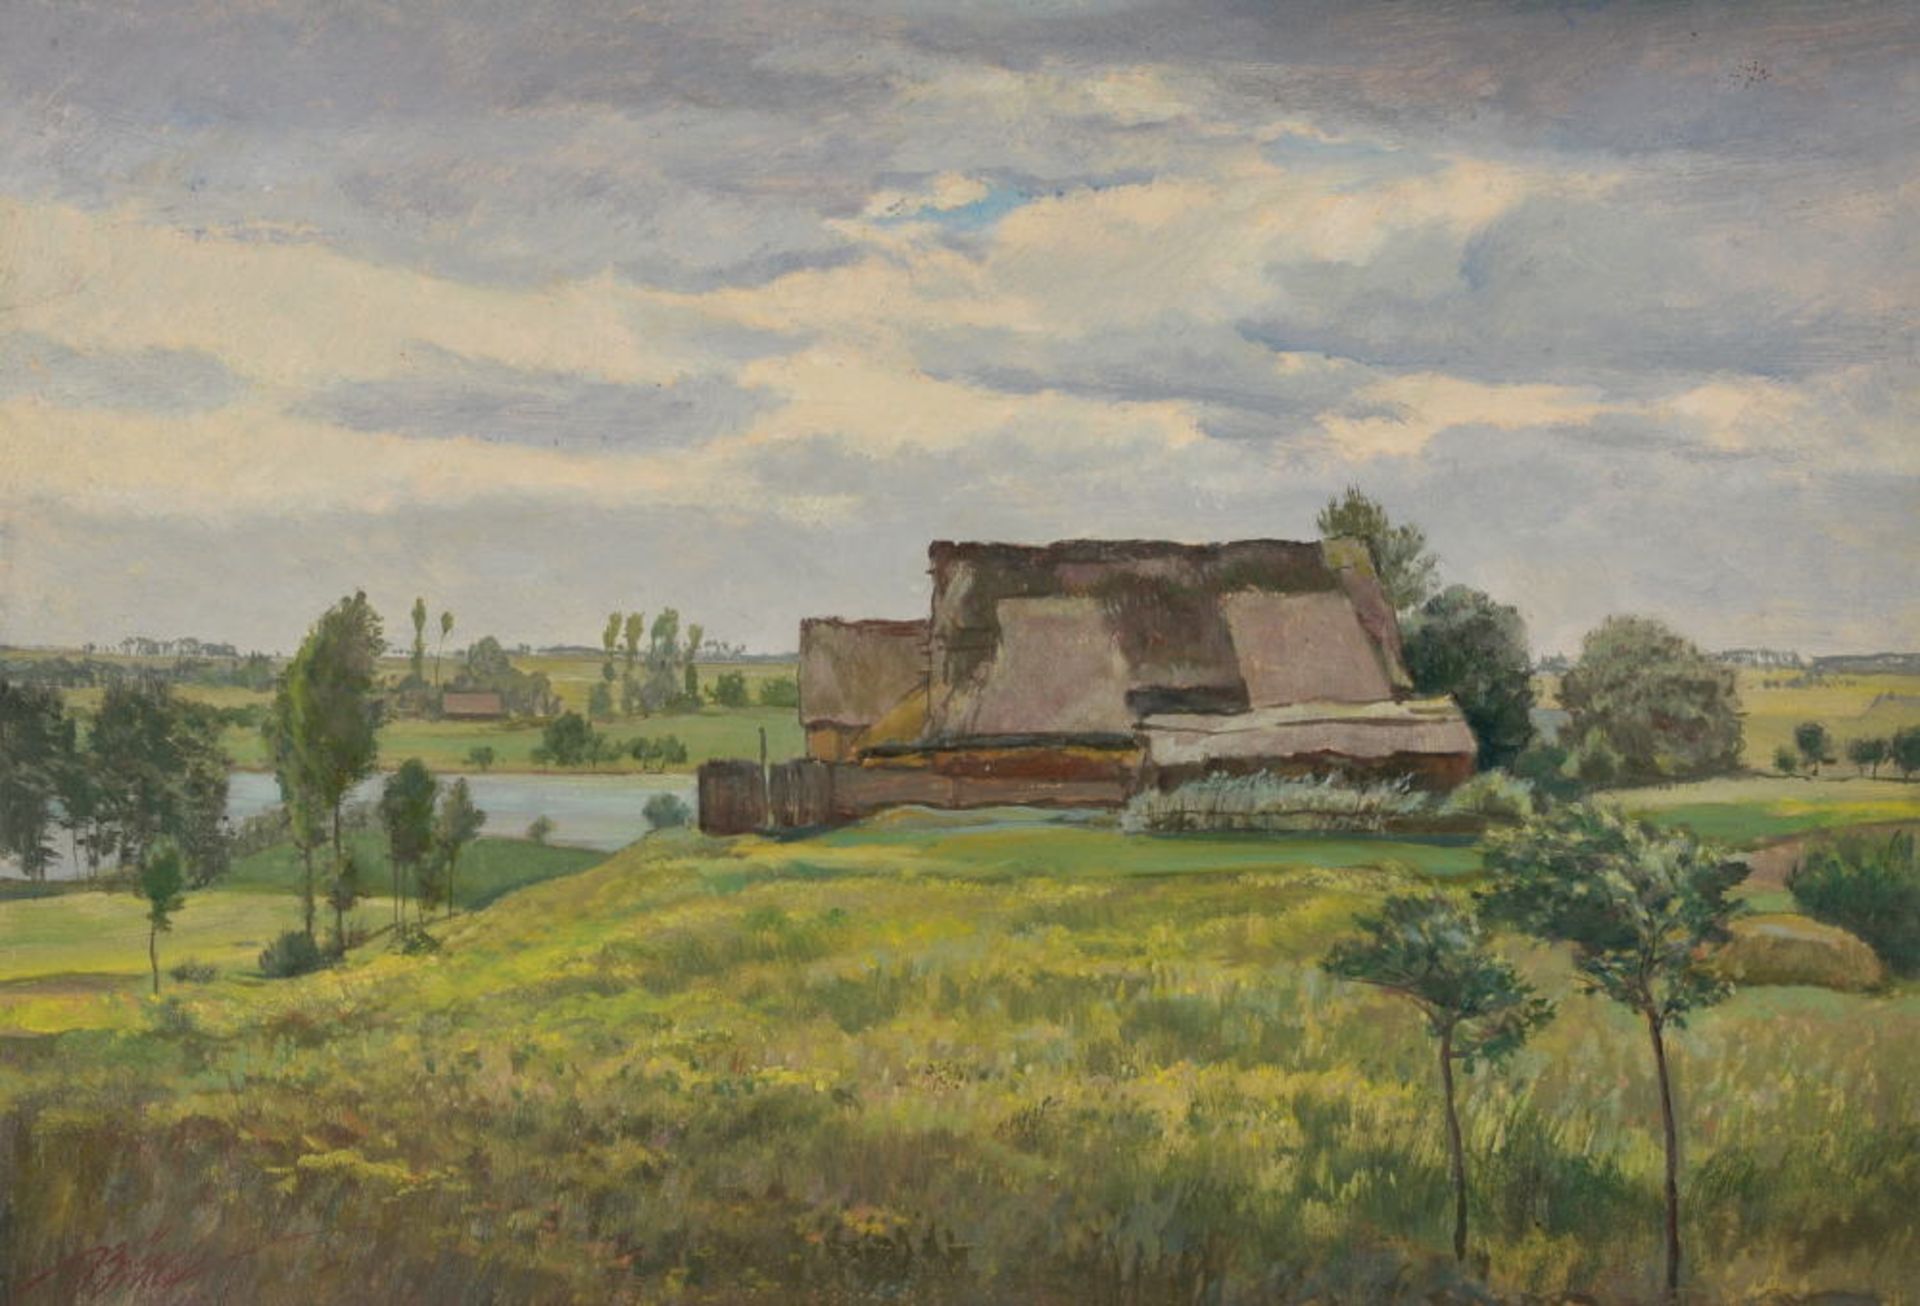 Bürck, Paul, 1878 Straßburg - 1947 MünchenÖl auf leichten Karton, 38 x 55 cm, " Bauernhäuser in